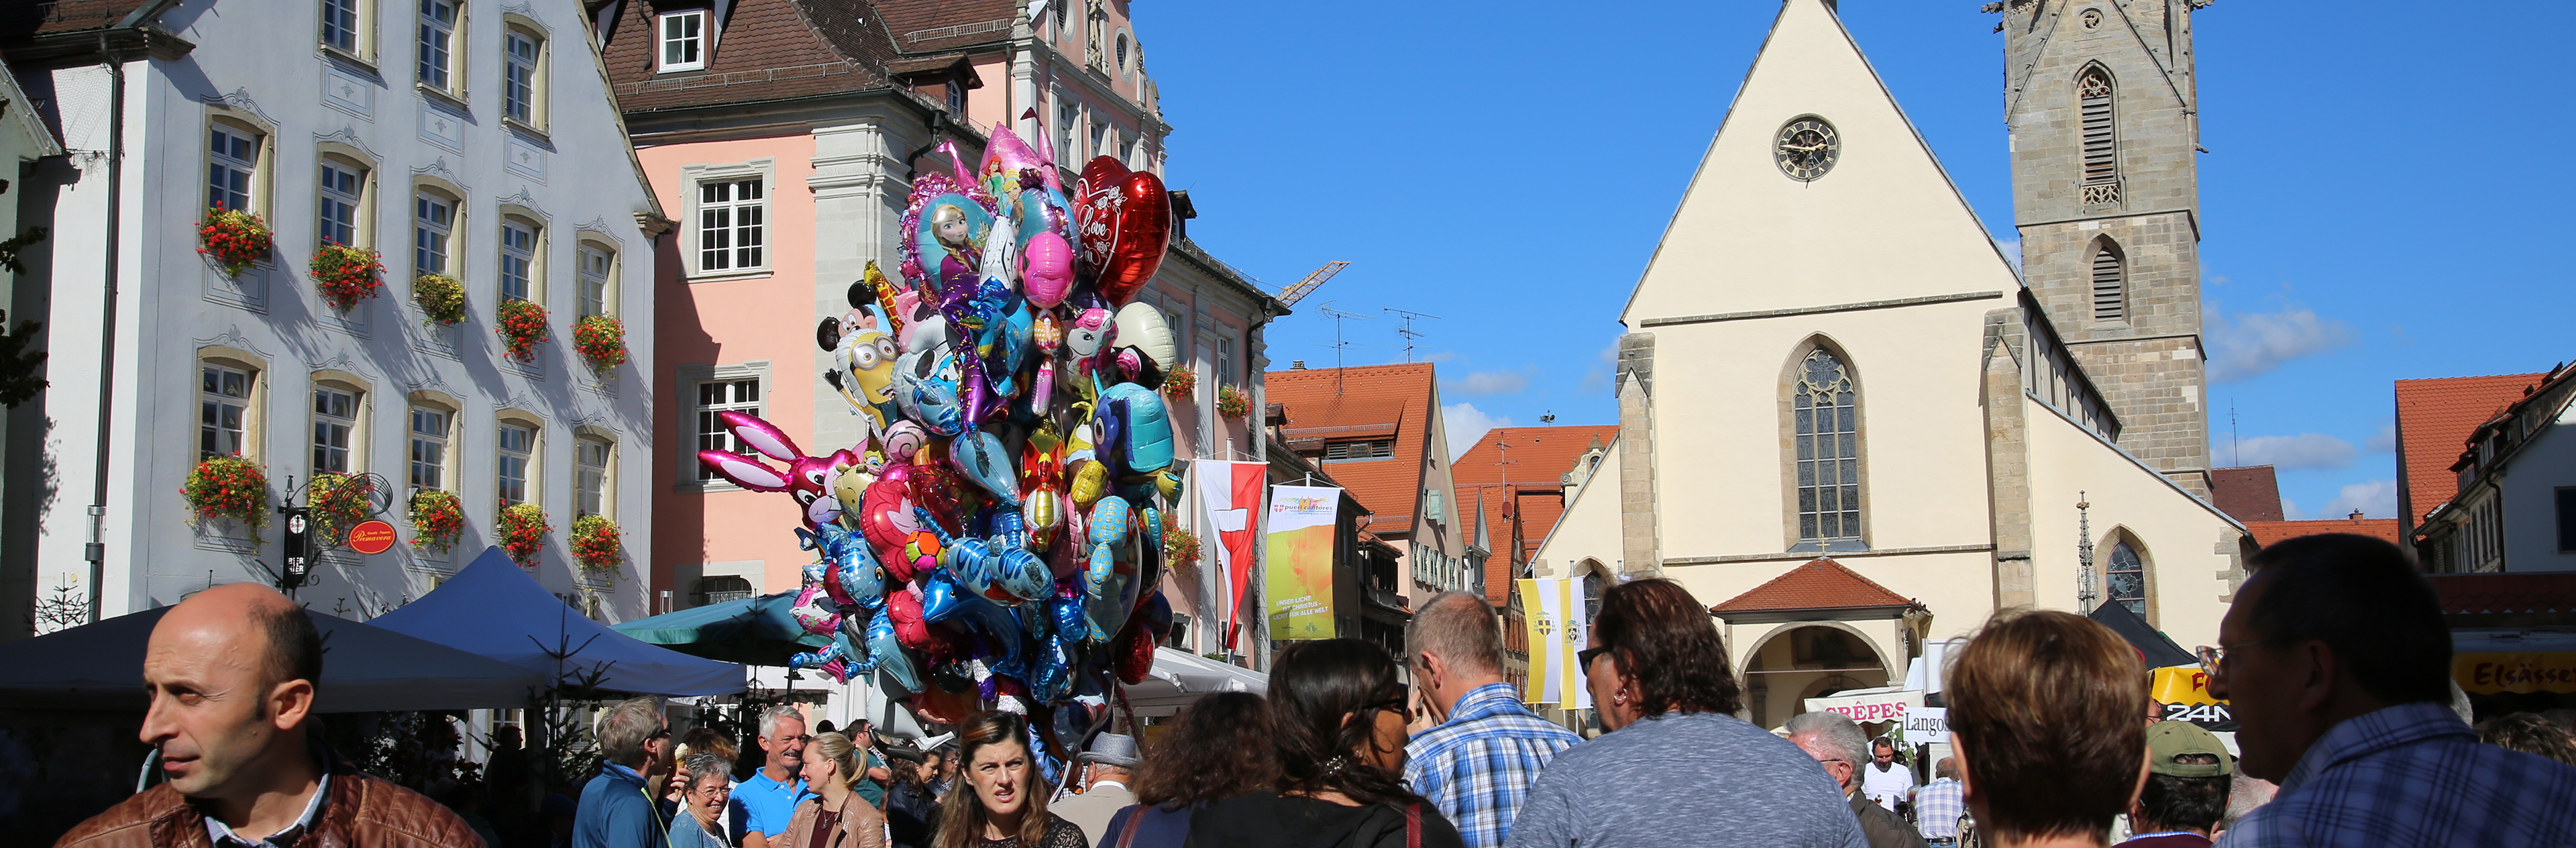 Luftballons und Menschen auf dem Marktplatz bei der Veranstaltung Goldener Oktober